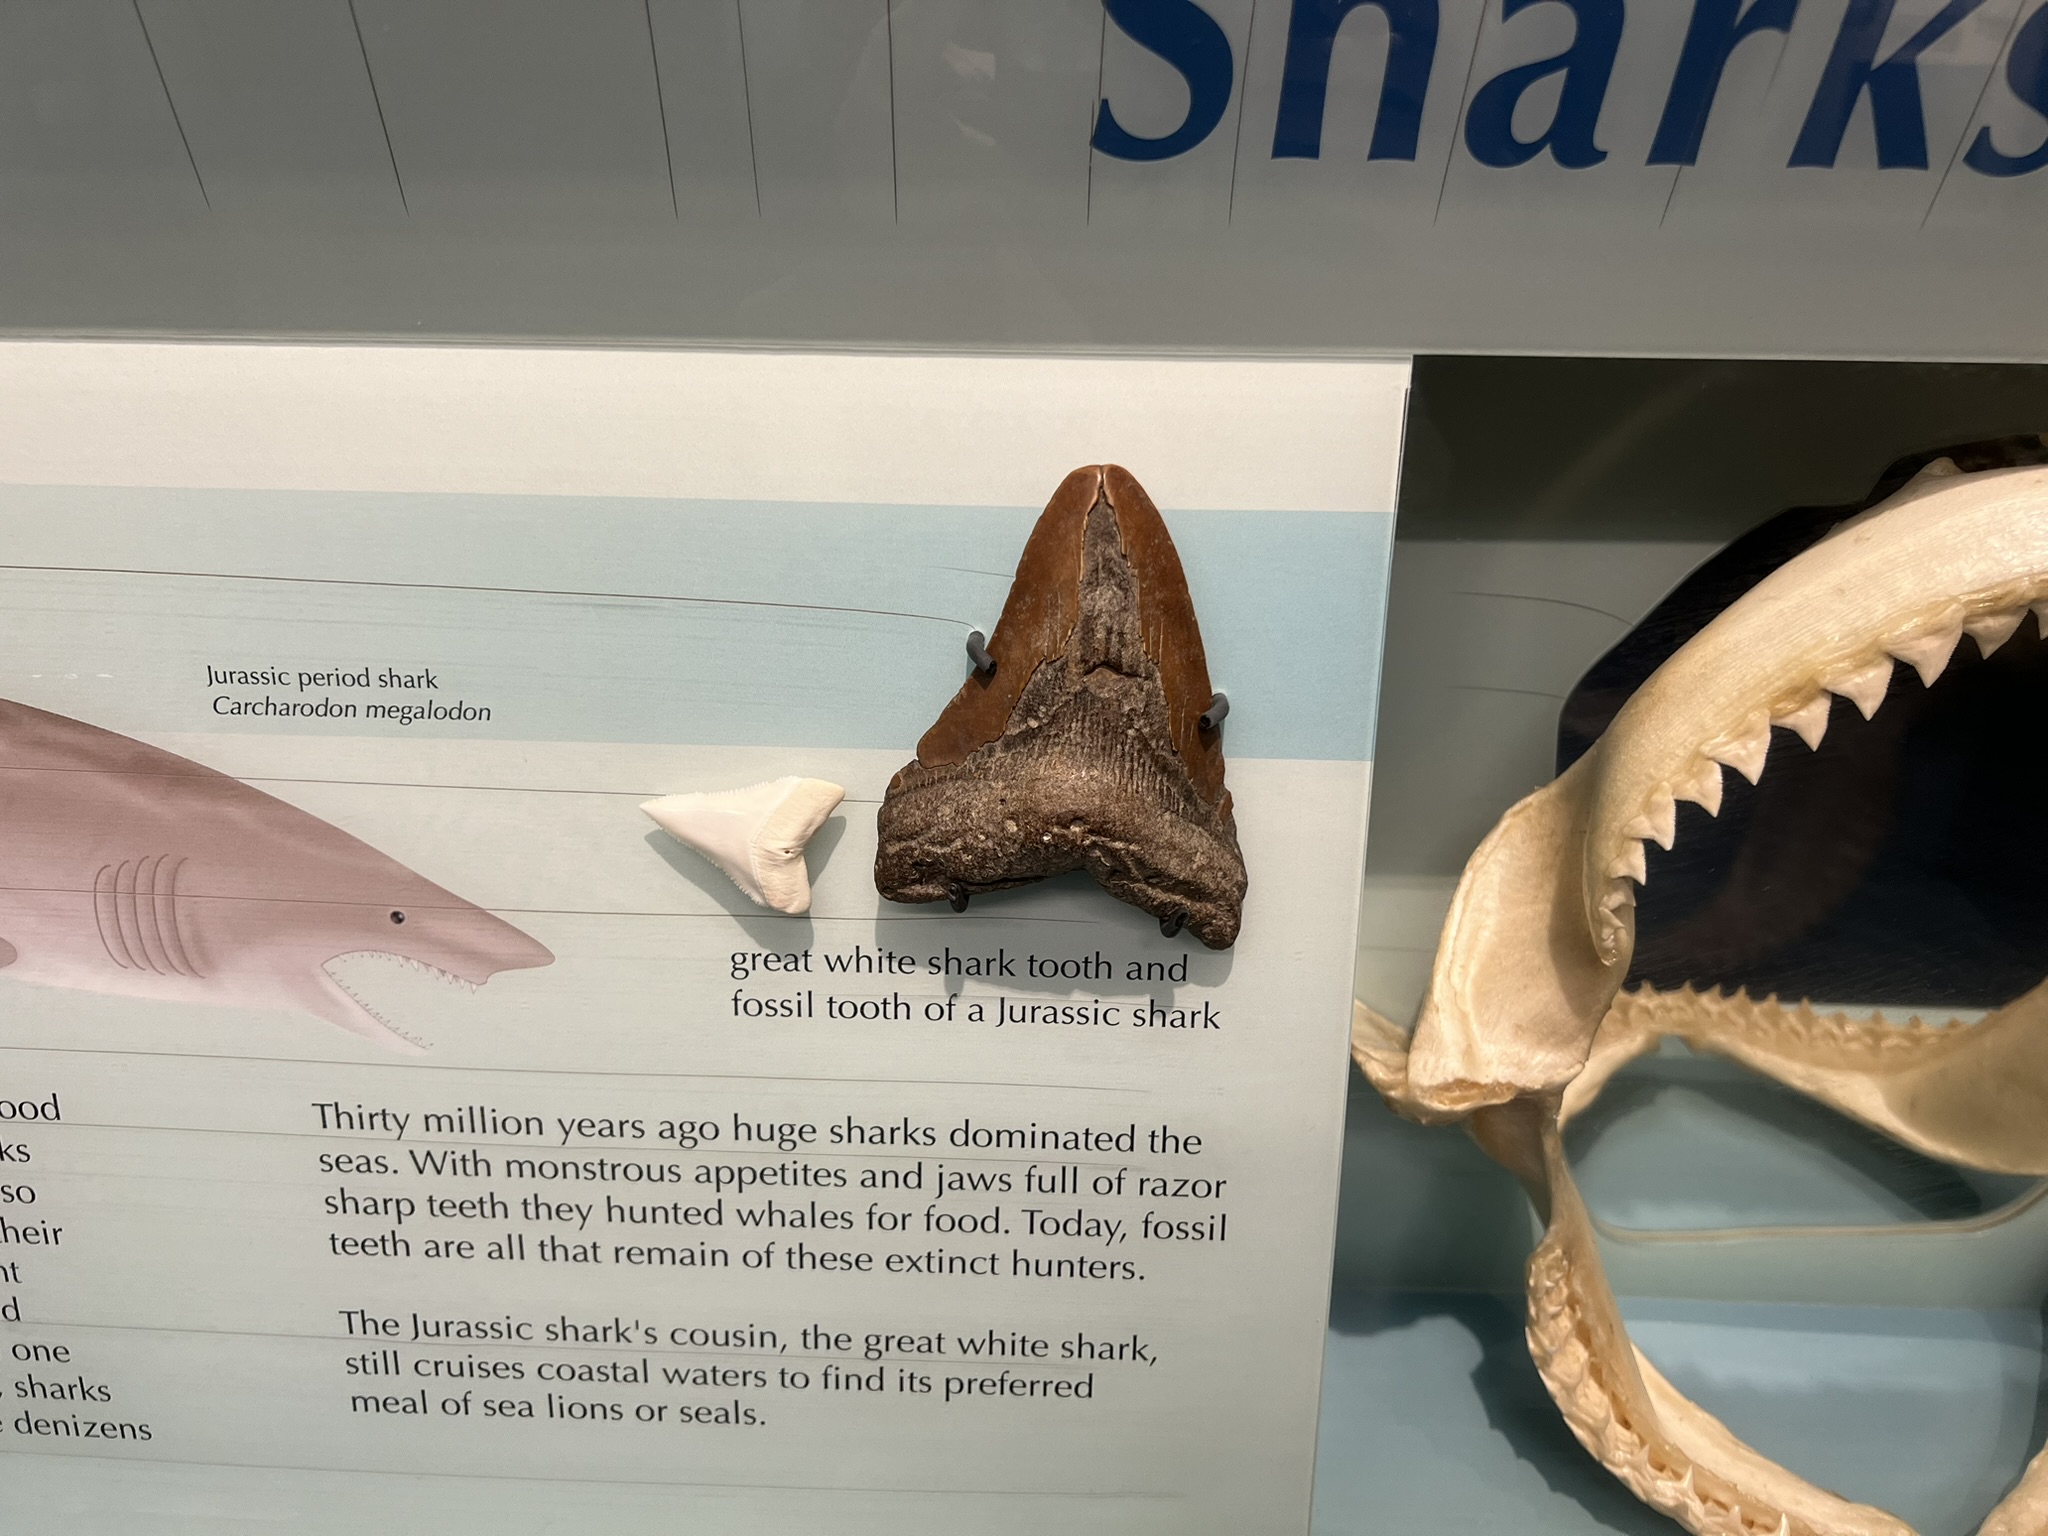 鲨鱼的牙齿和远古鲨鱼的牙齿